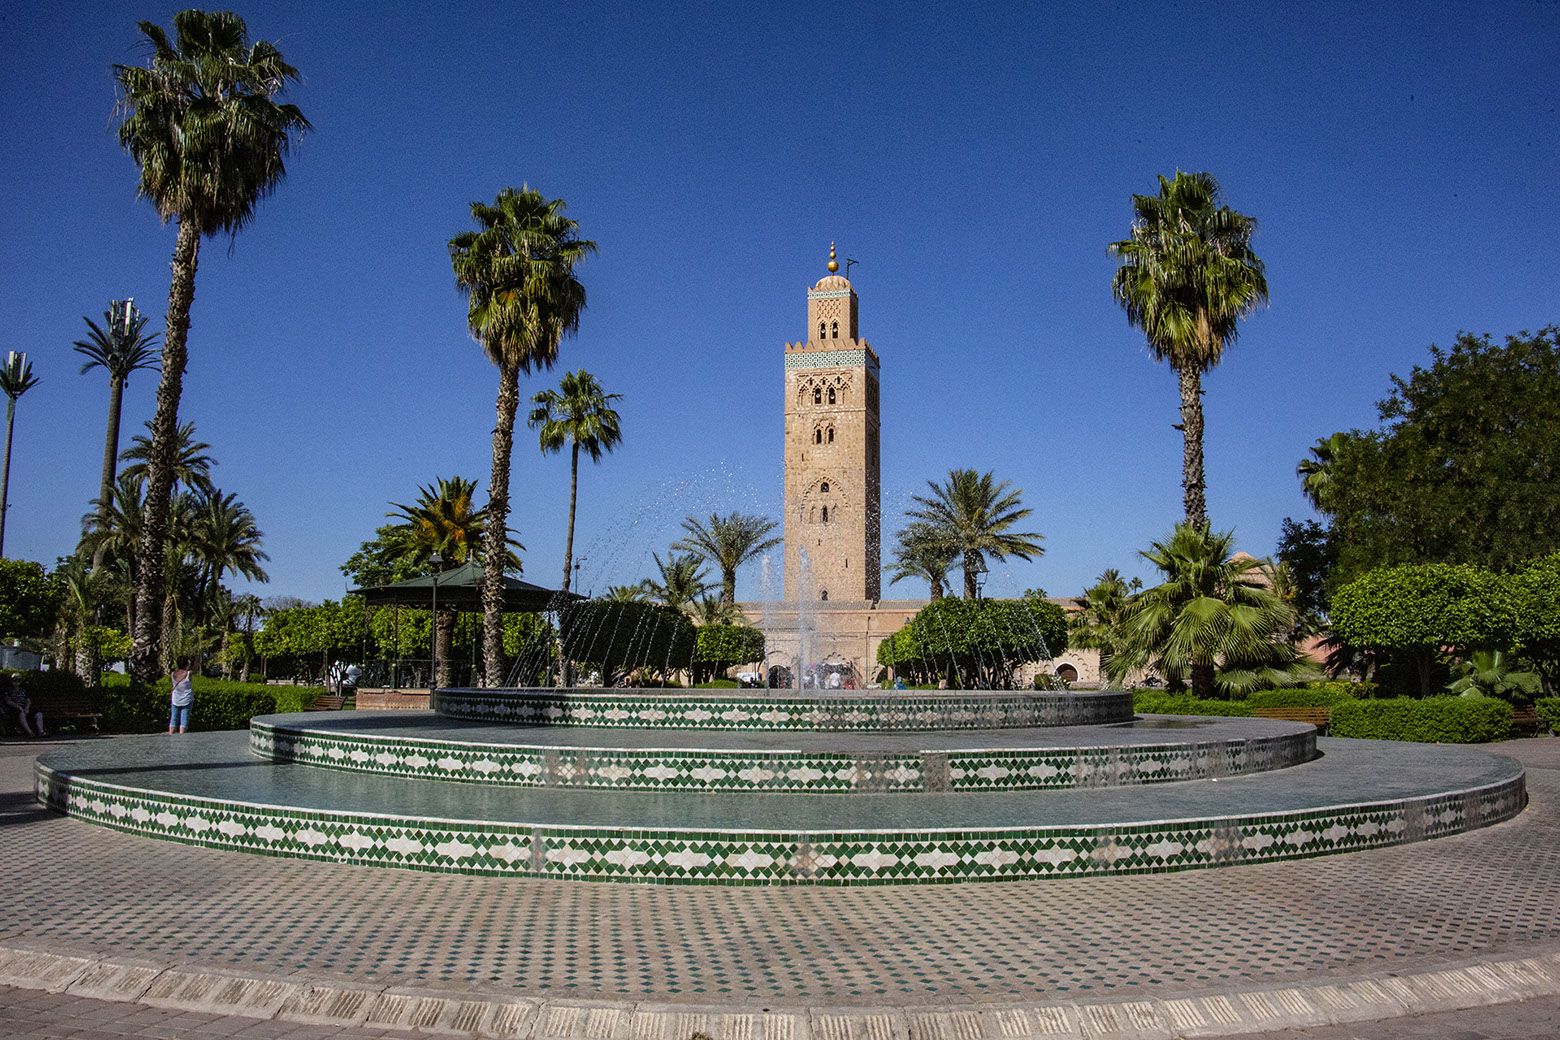 Central Mosque, Marakesh, Morocco.